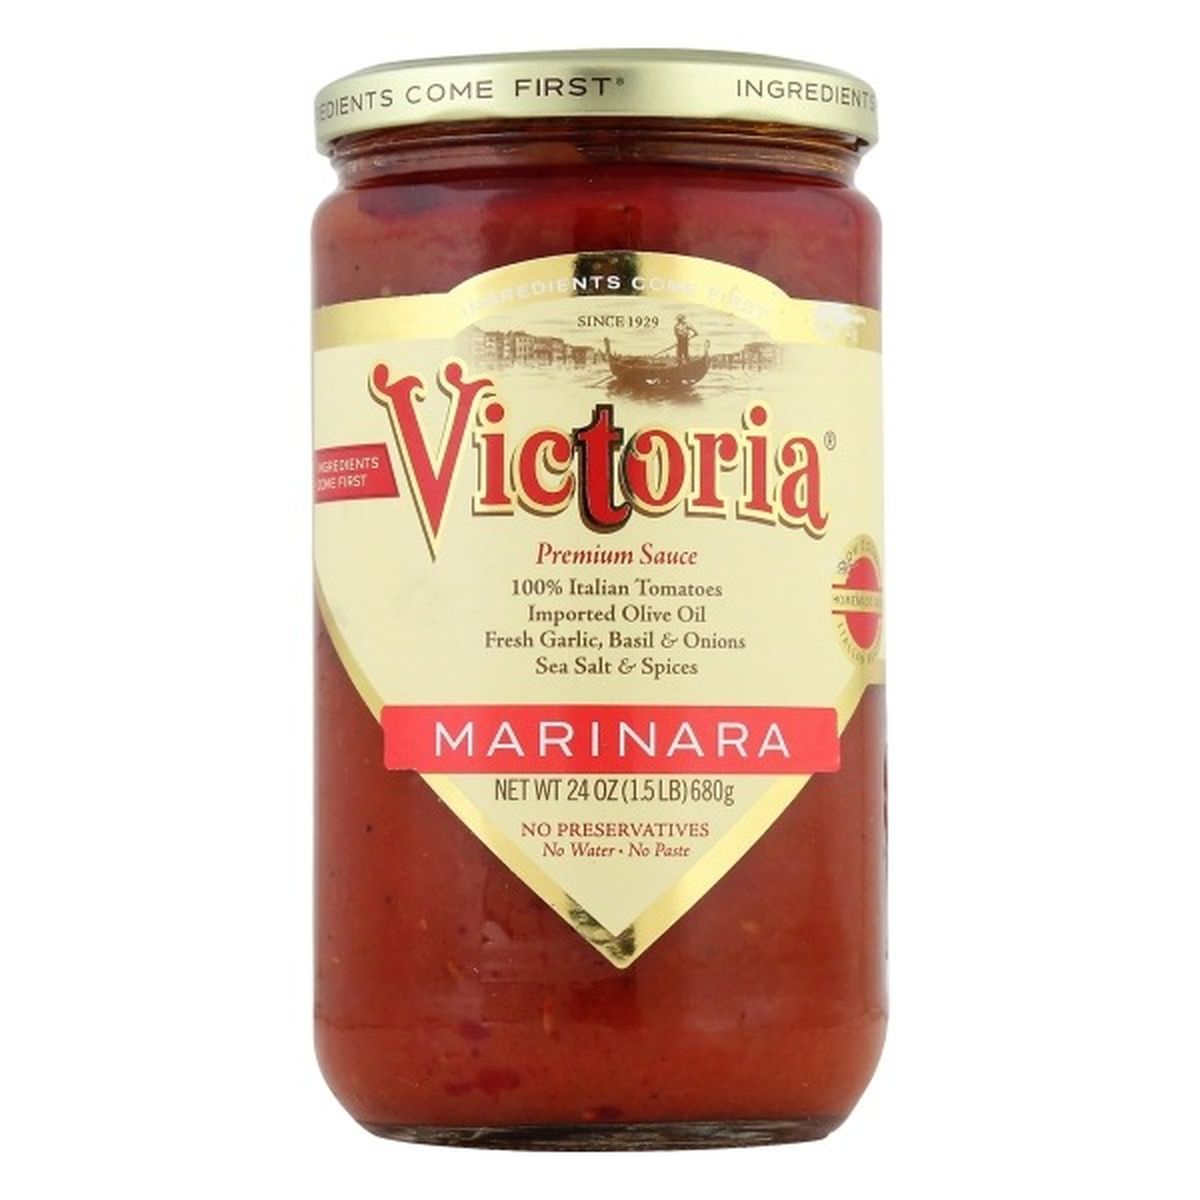 Calories in Victoria Sauce, Marinara, Premium